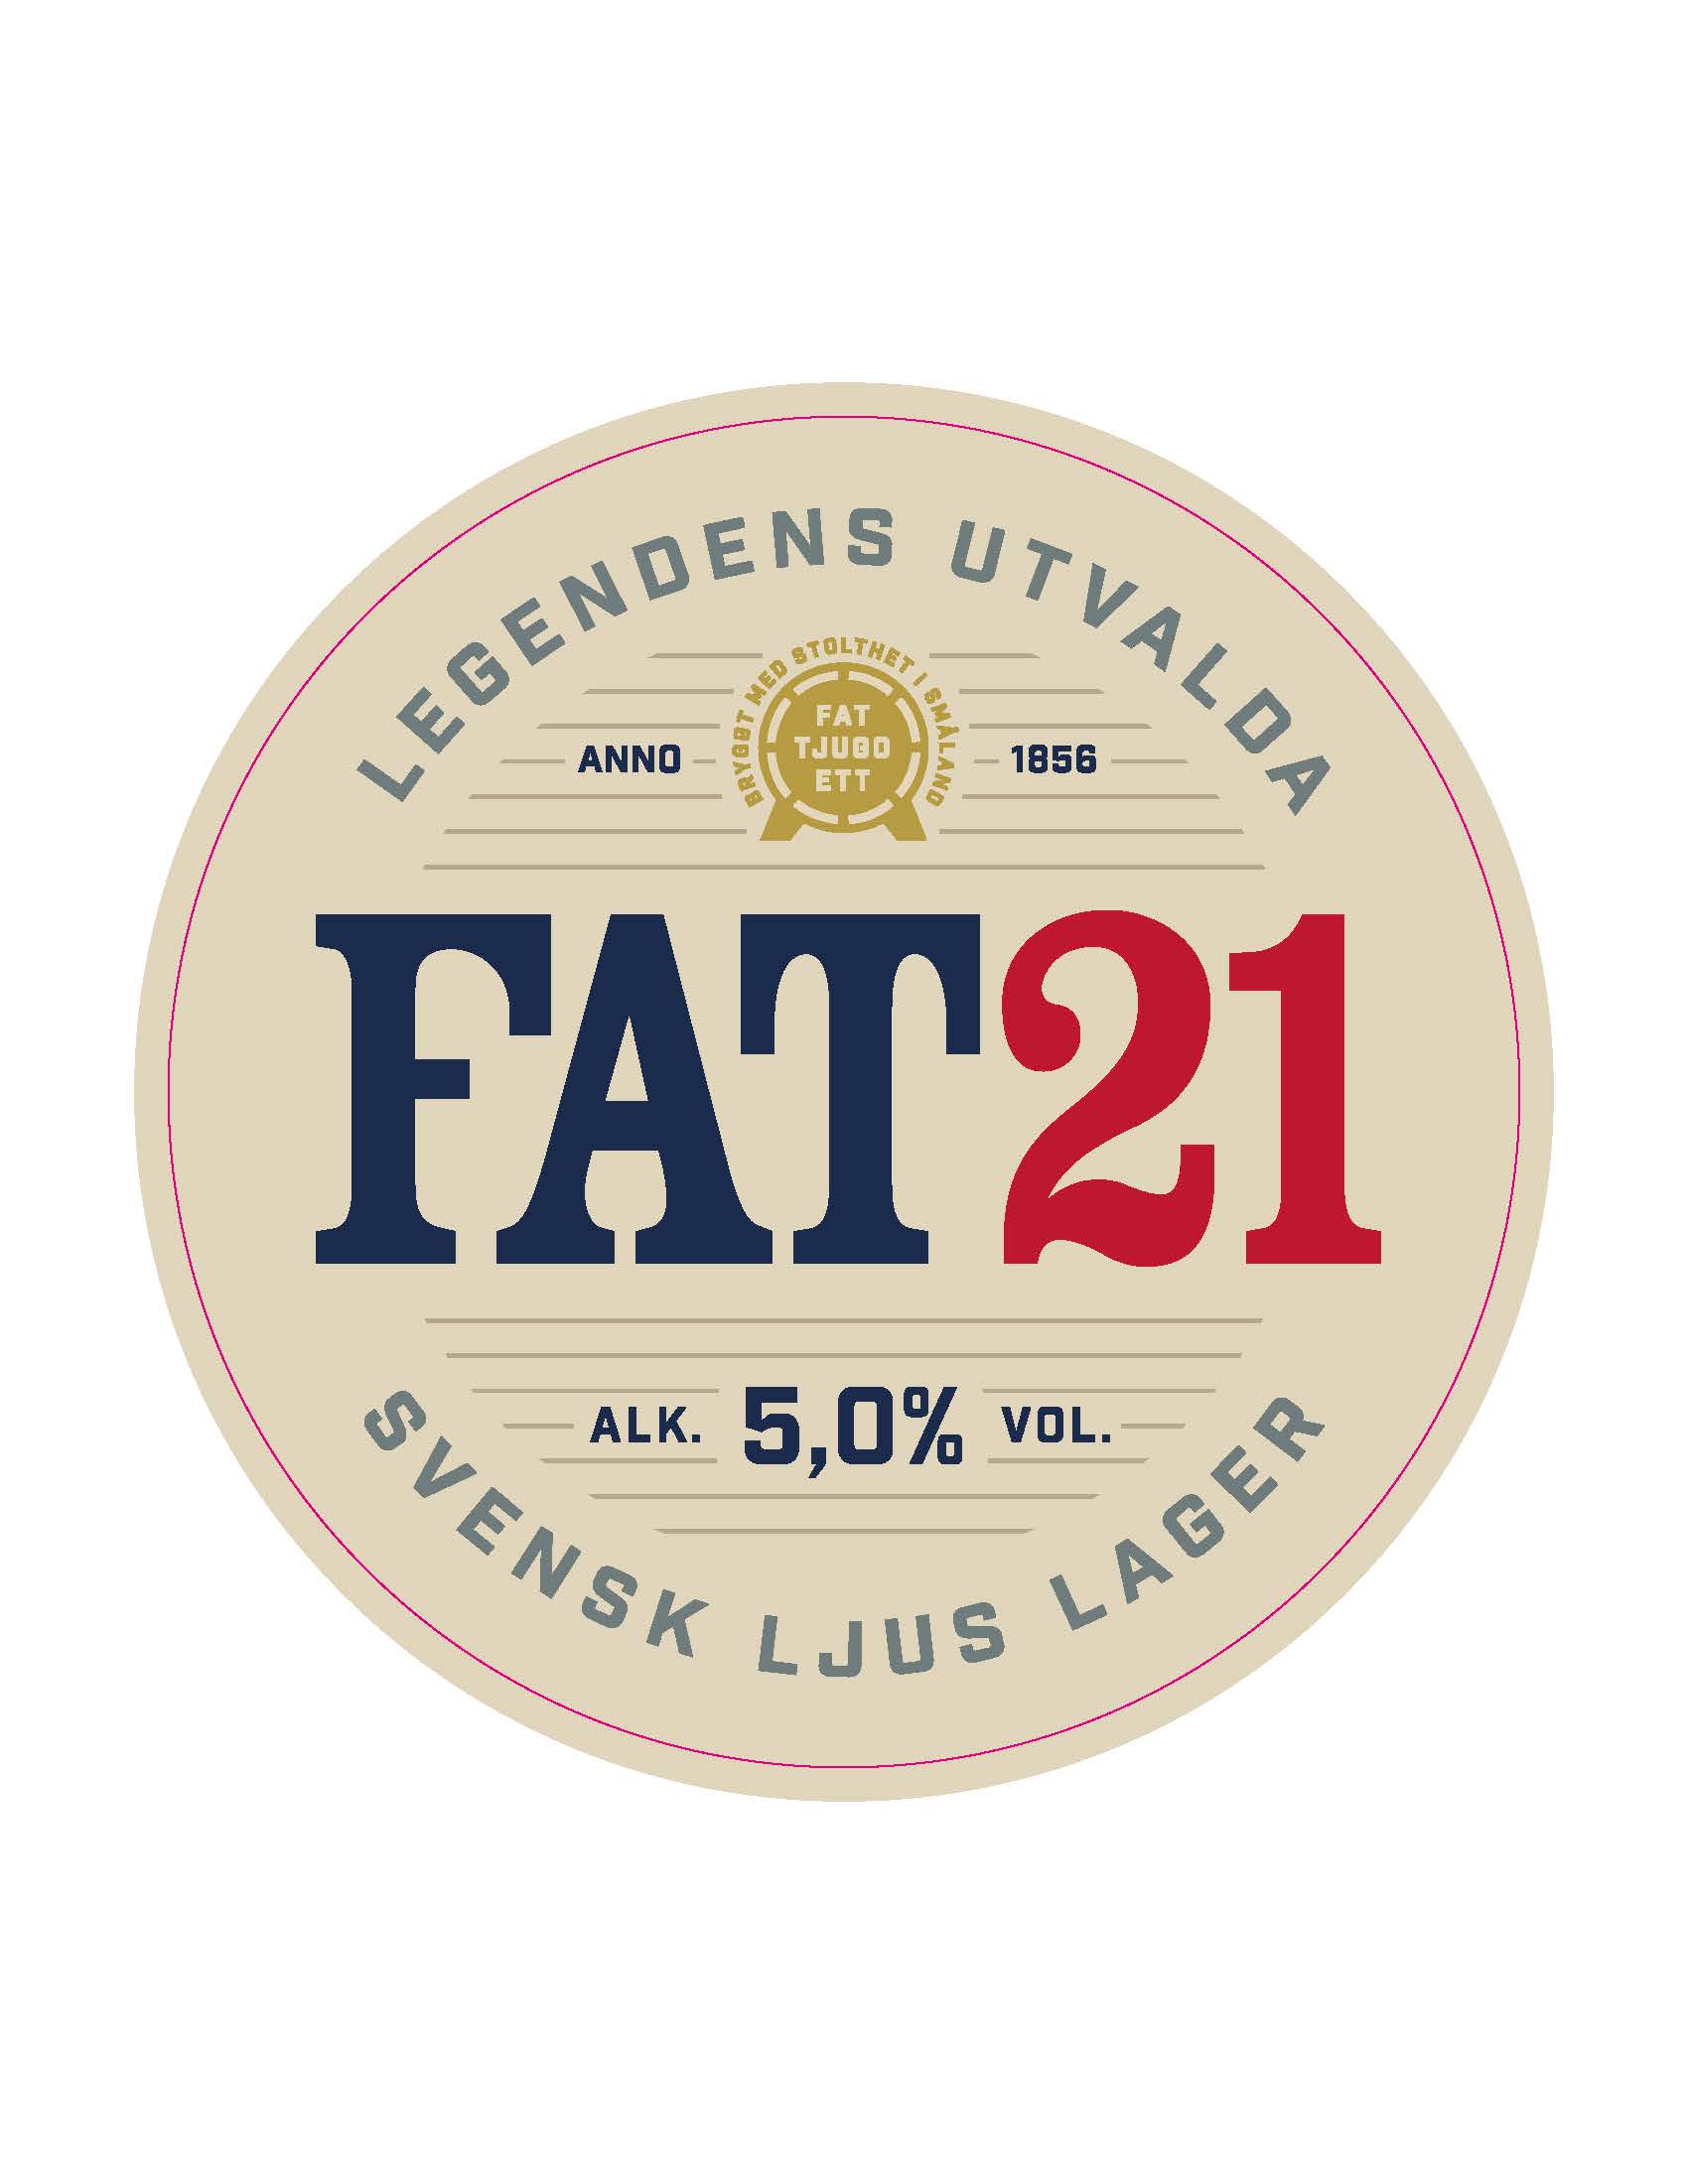 LEGENDENS UTVALDA FAT21 SVENSK LJUS LAGER ANNO 1856 BRYGGT MED STOLTHET I SMÅLAND FAT TJUGO ETT ALK. 5,0% VOL.